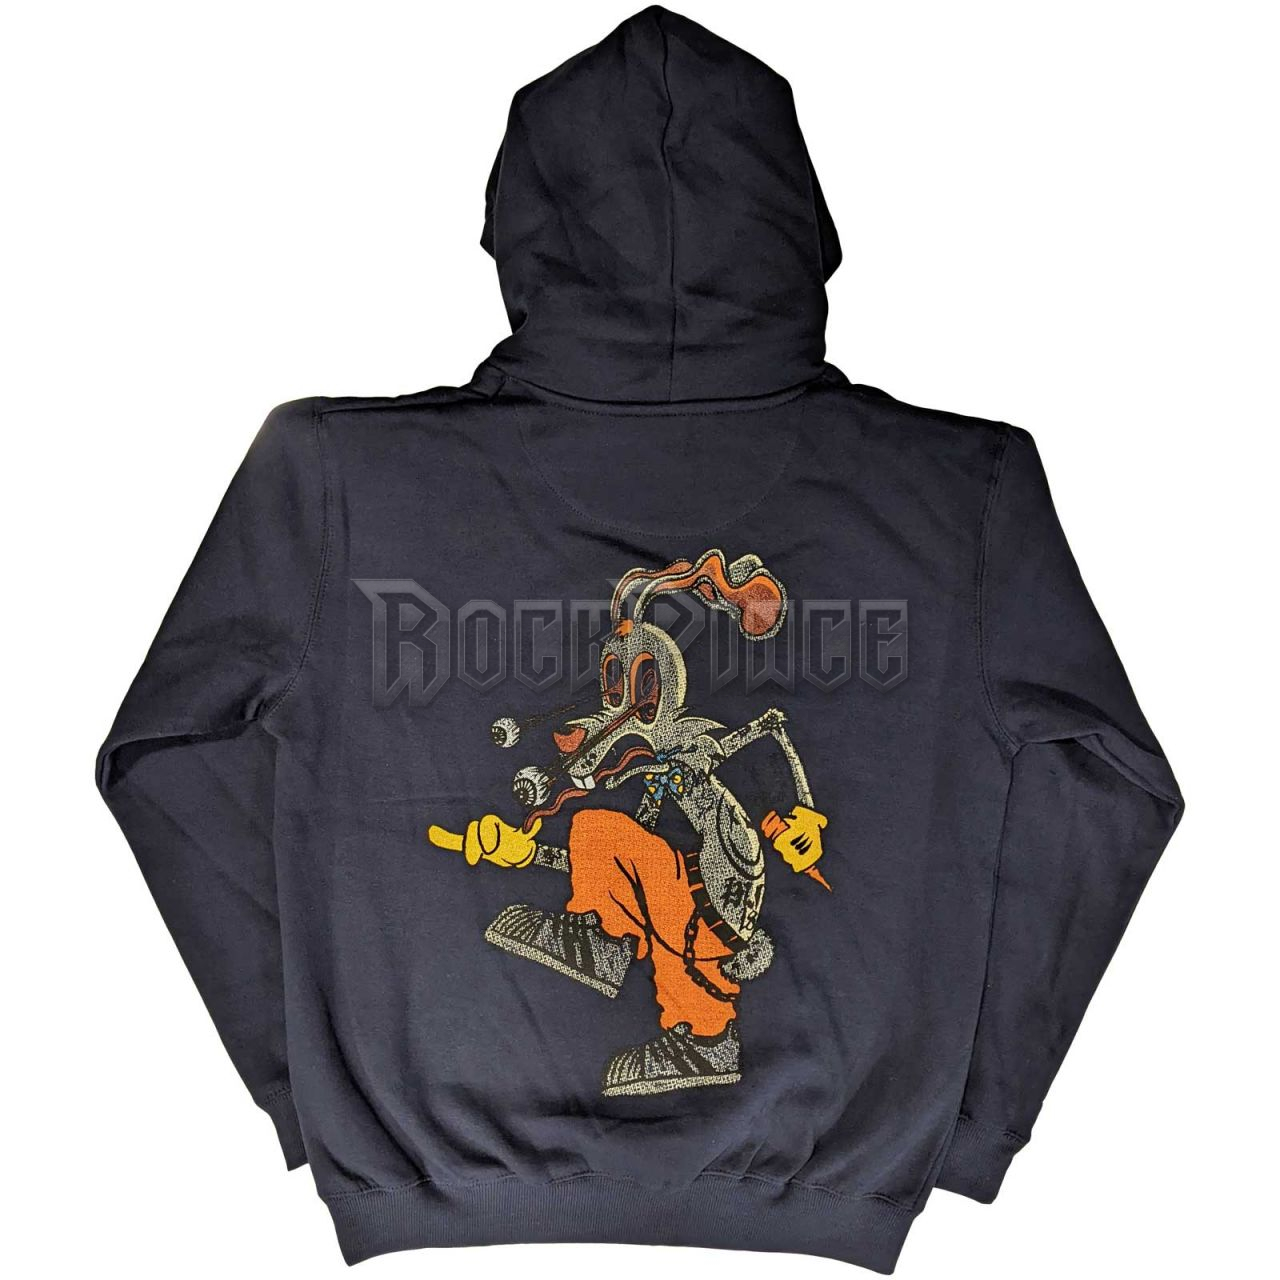 Blink-182 - Roger Rabbit - unisex kapucnis pulóver - BLINKHD07MN